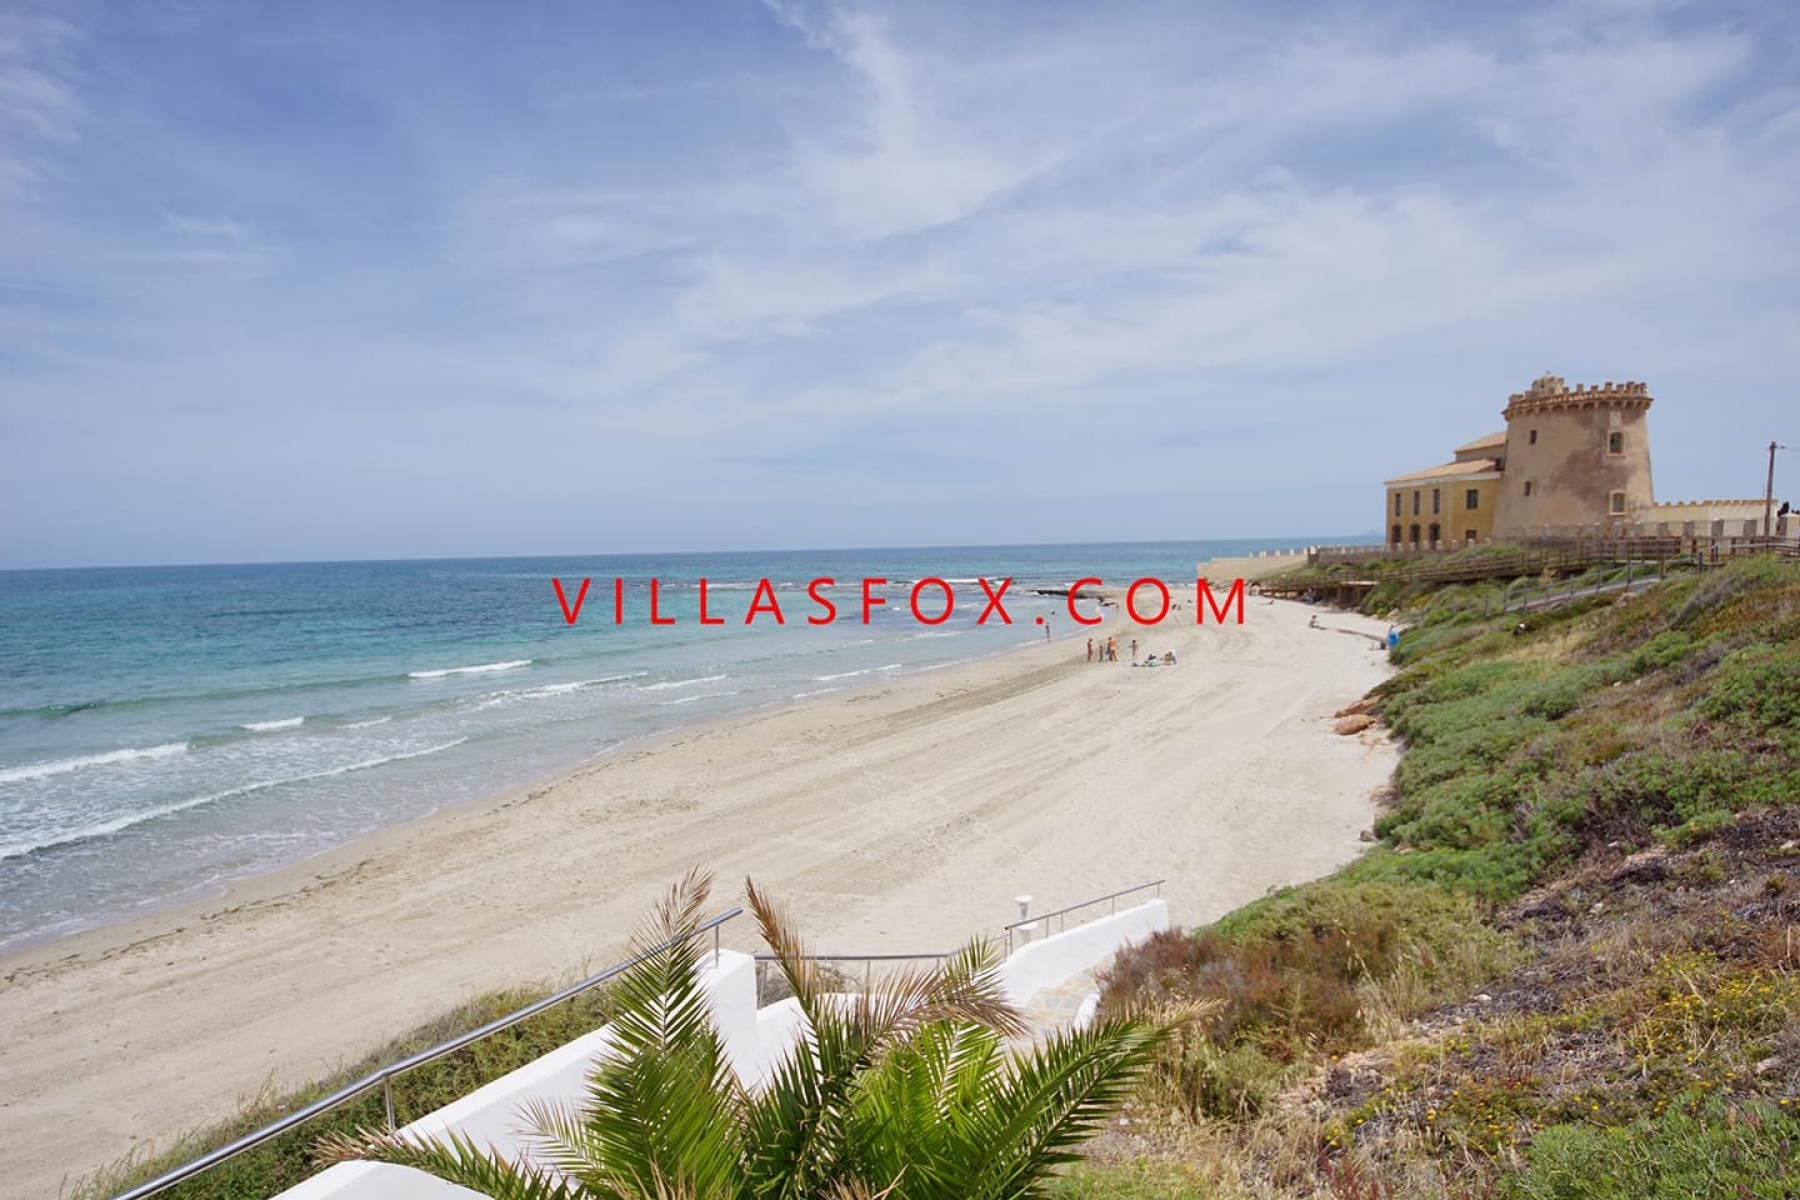 Torre_de_la_Horadada_tower_and_beach_by_Villas_Fox